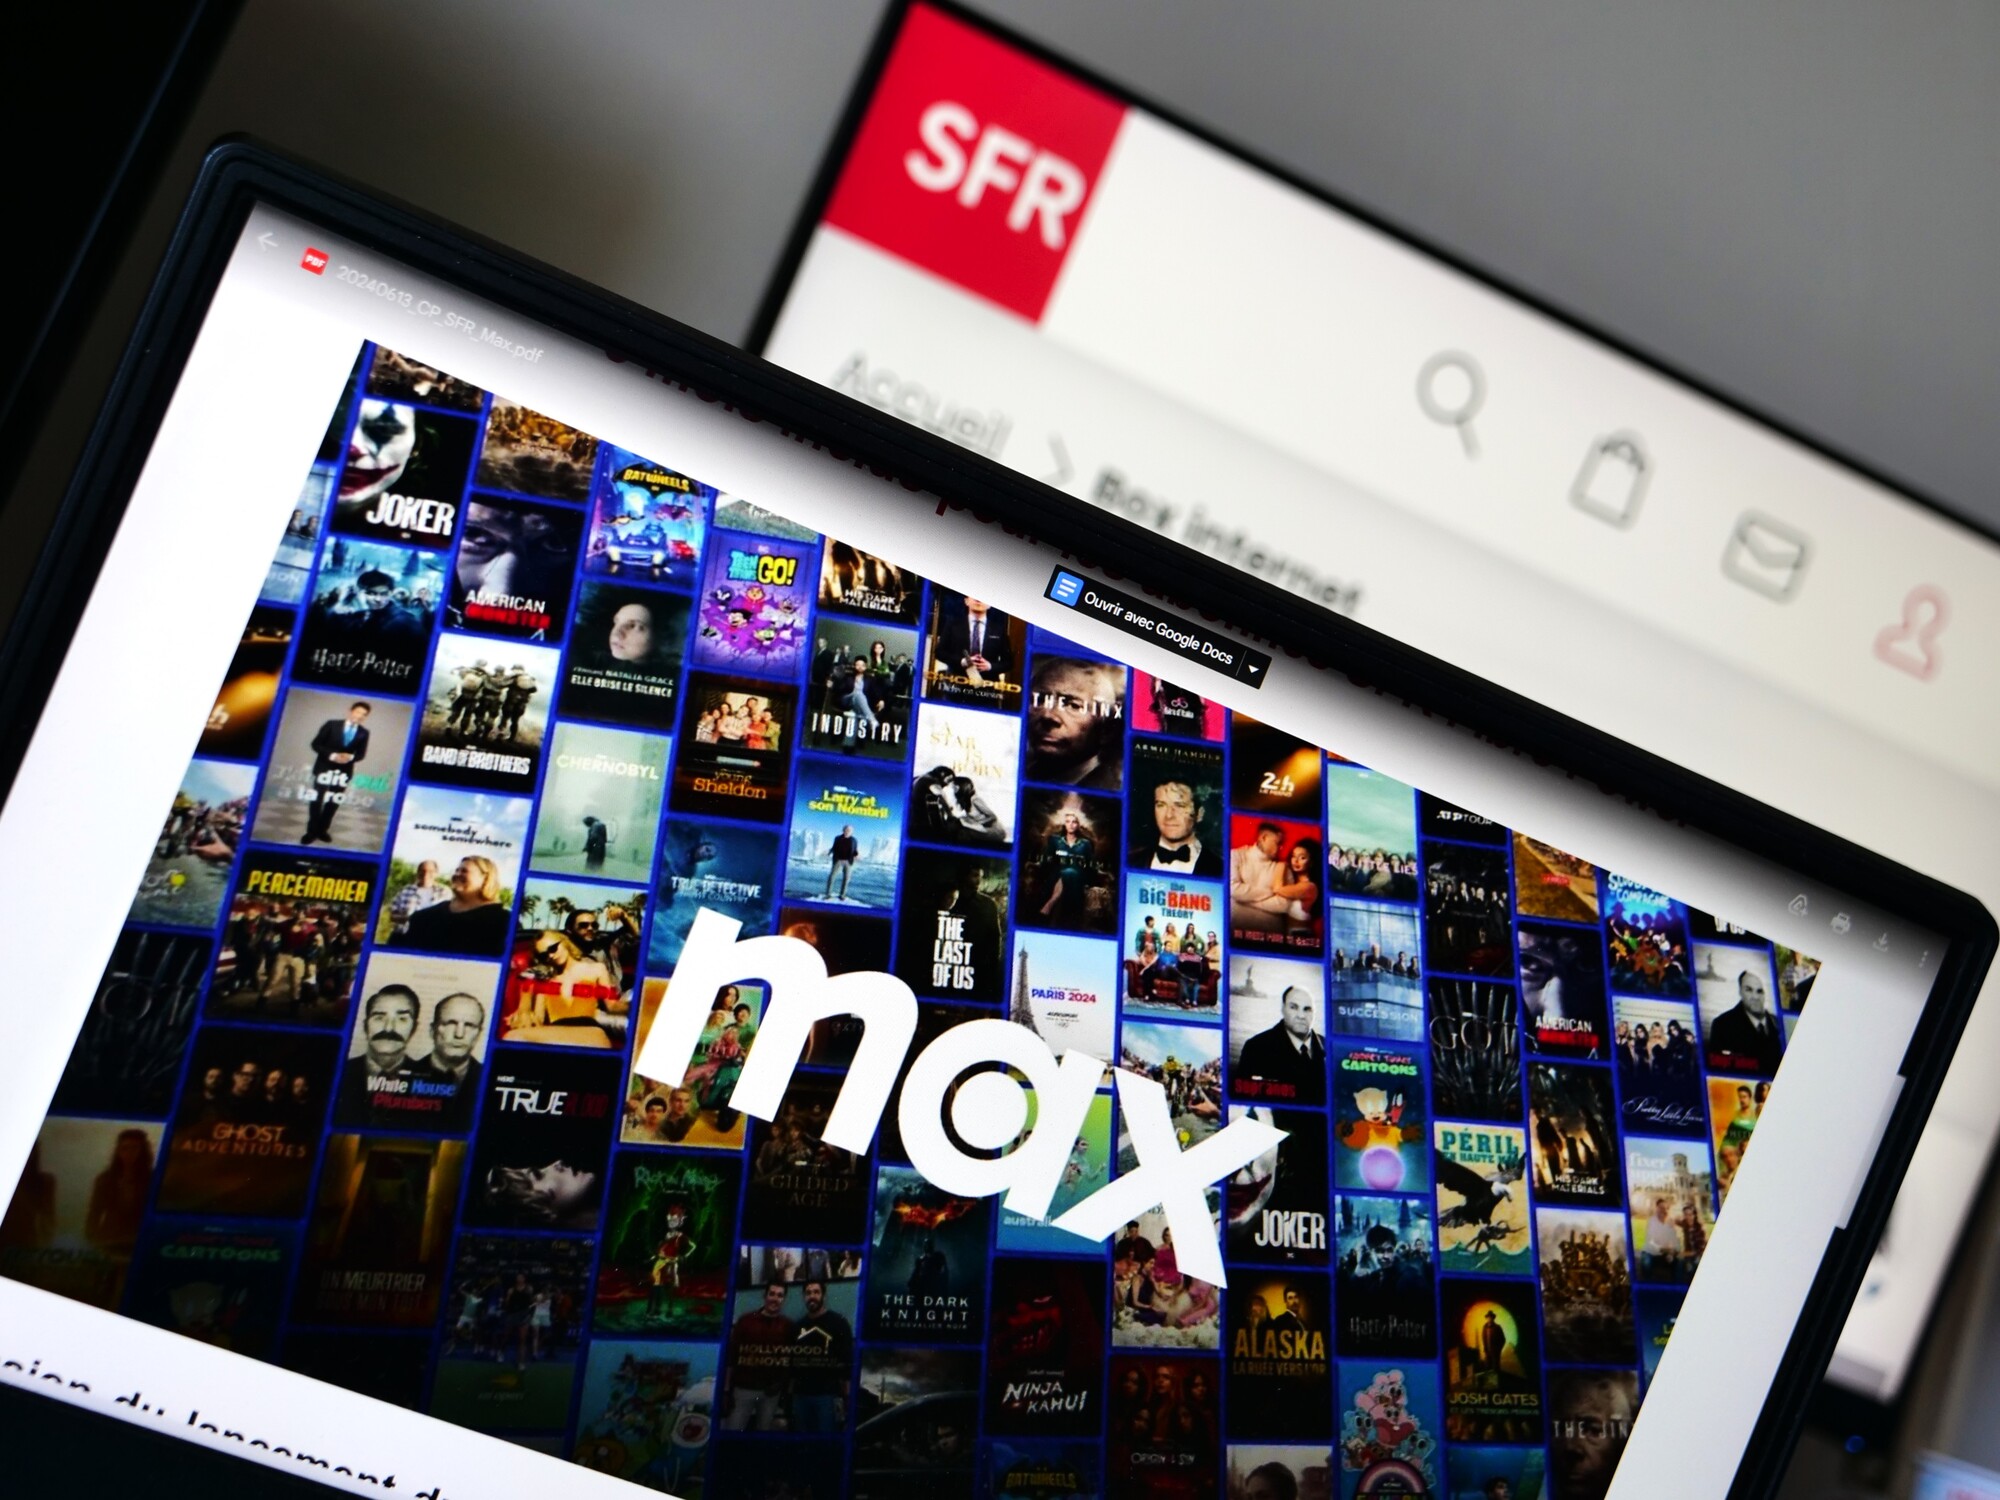 SFR offre le service de streaming Max pendant 6 mois, et fait mieux qu'Orange et Free